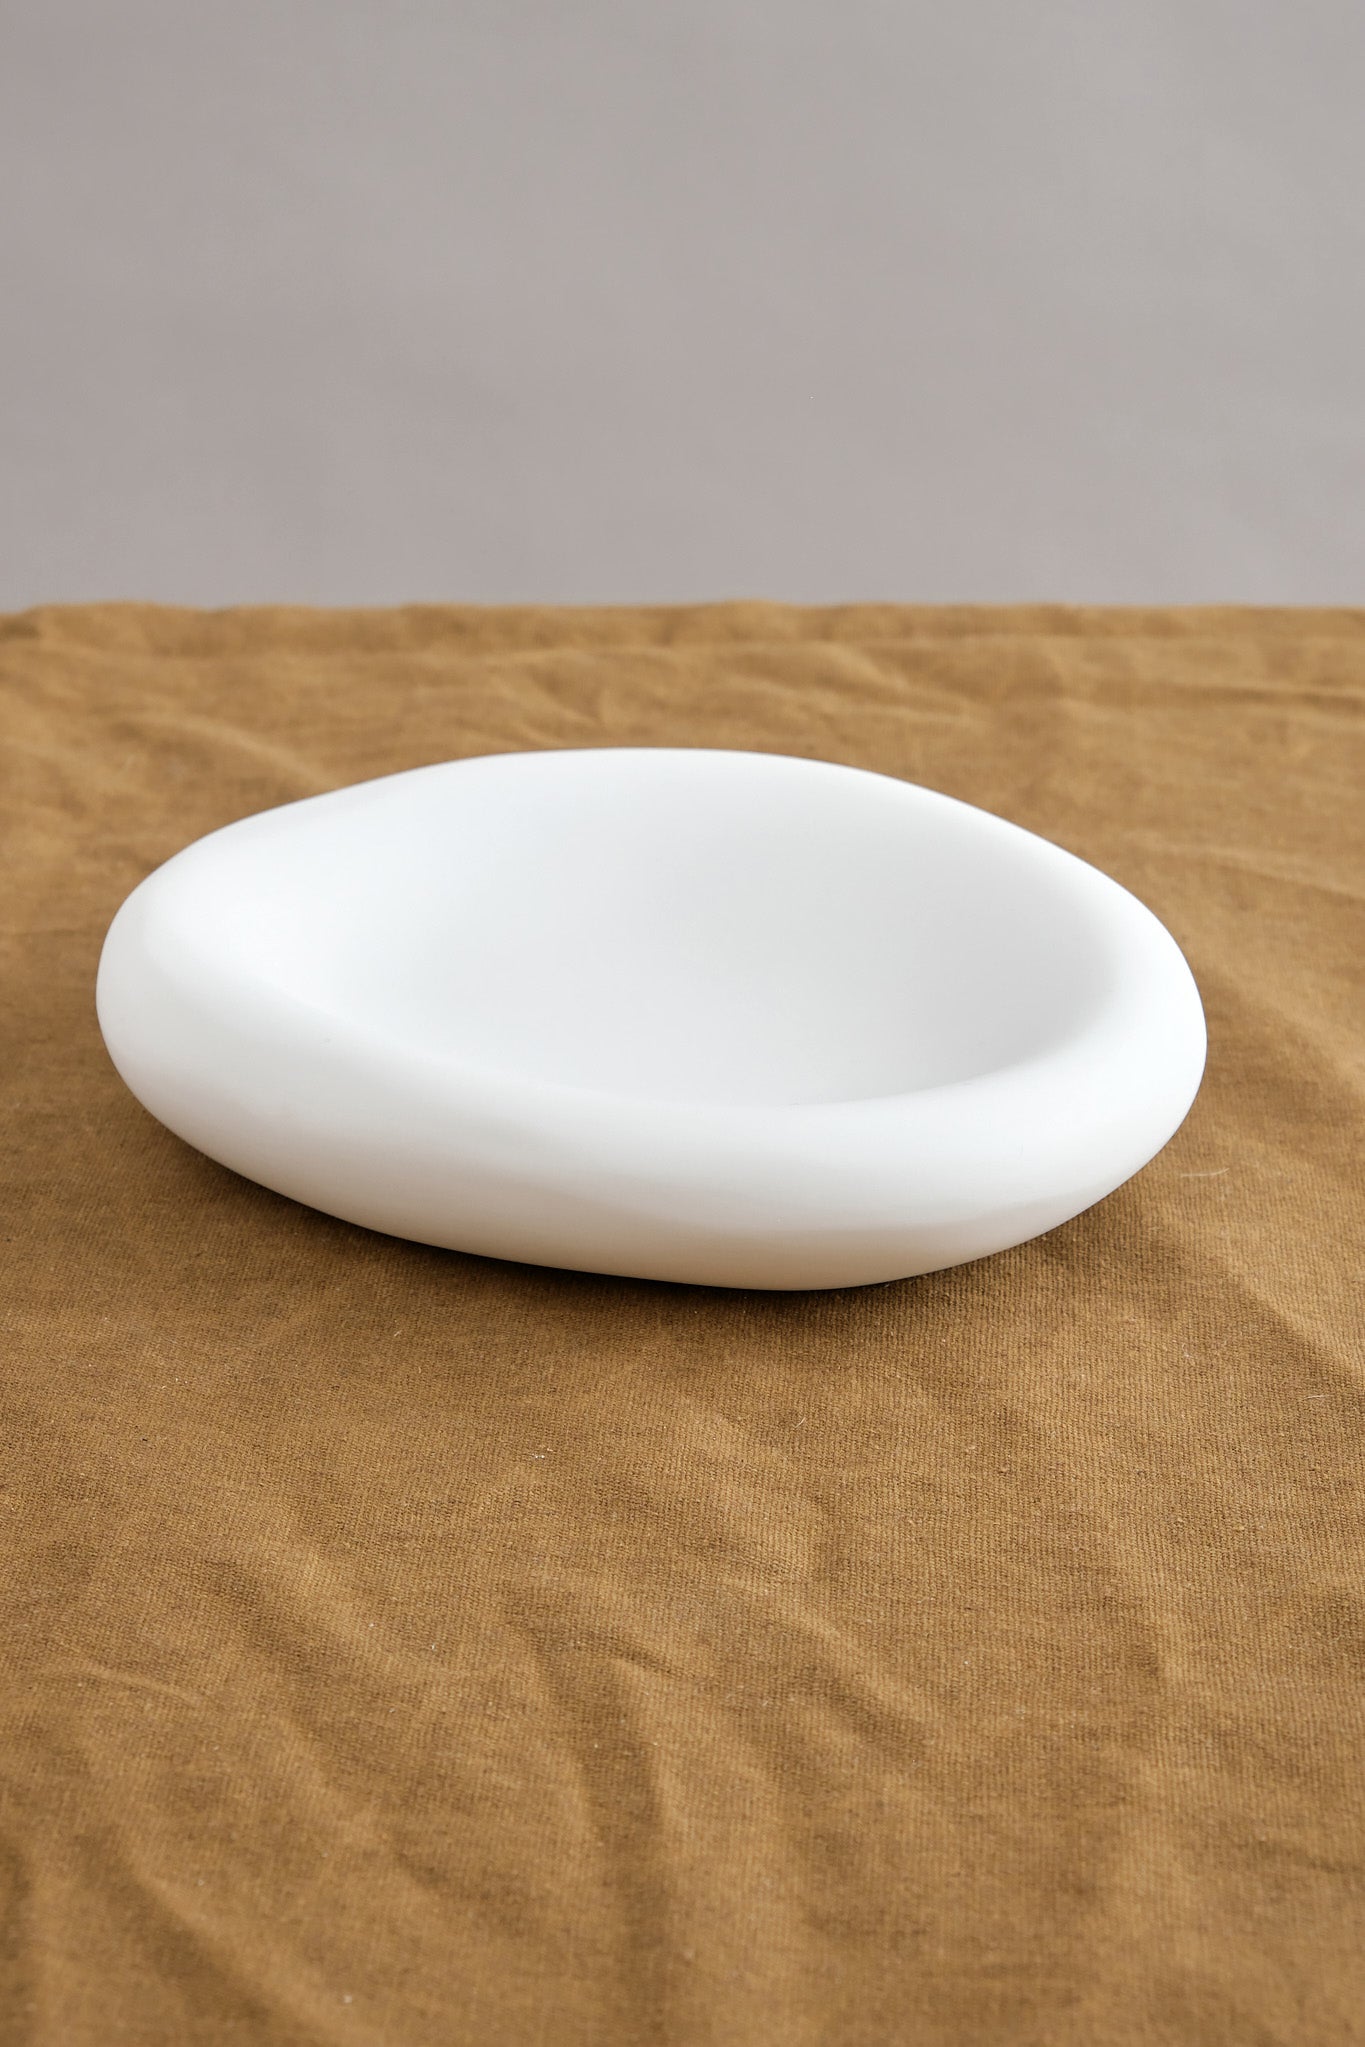 Tina Frey Designs Medium Amoeba Bowl in white